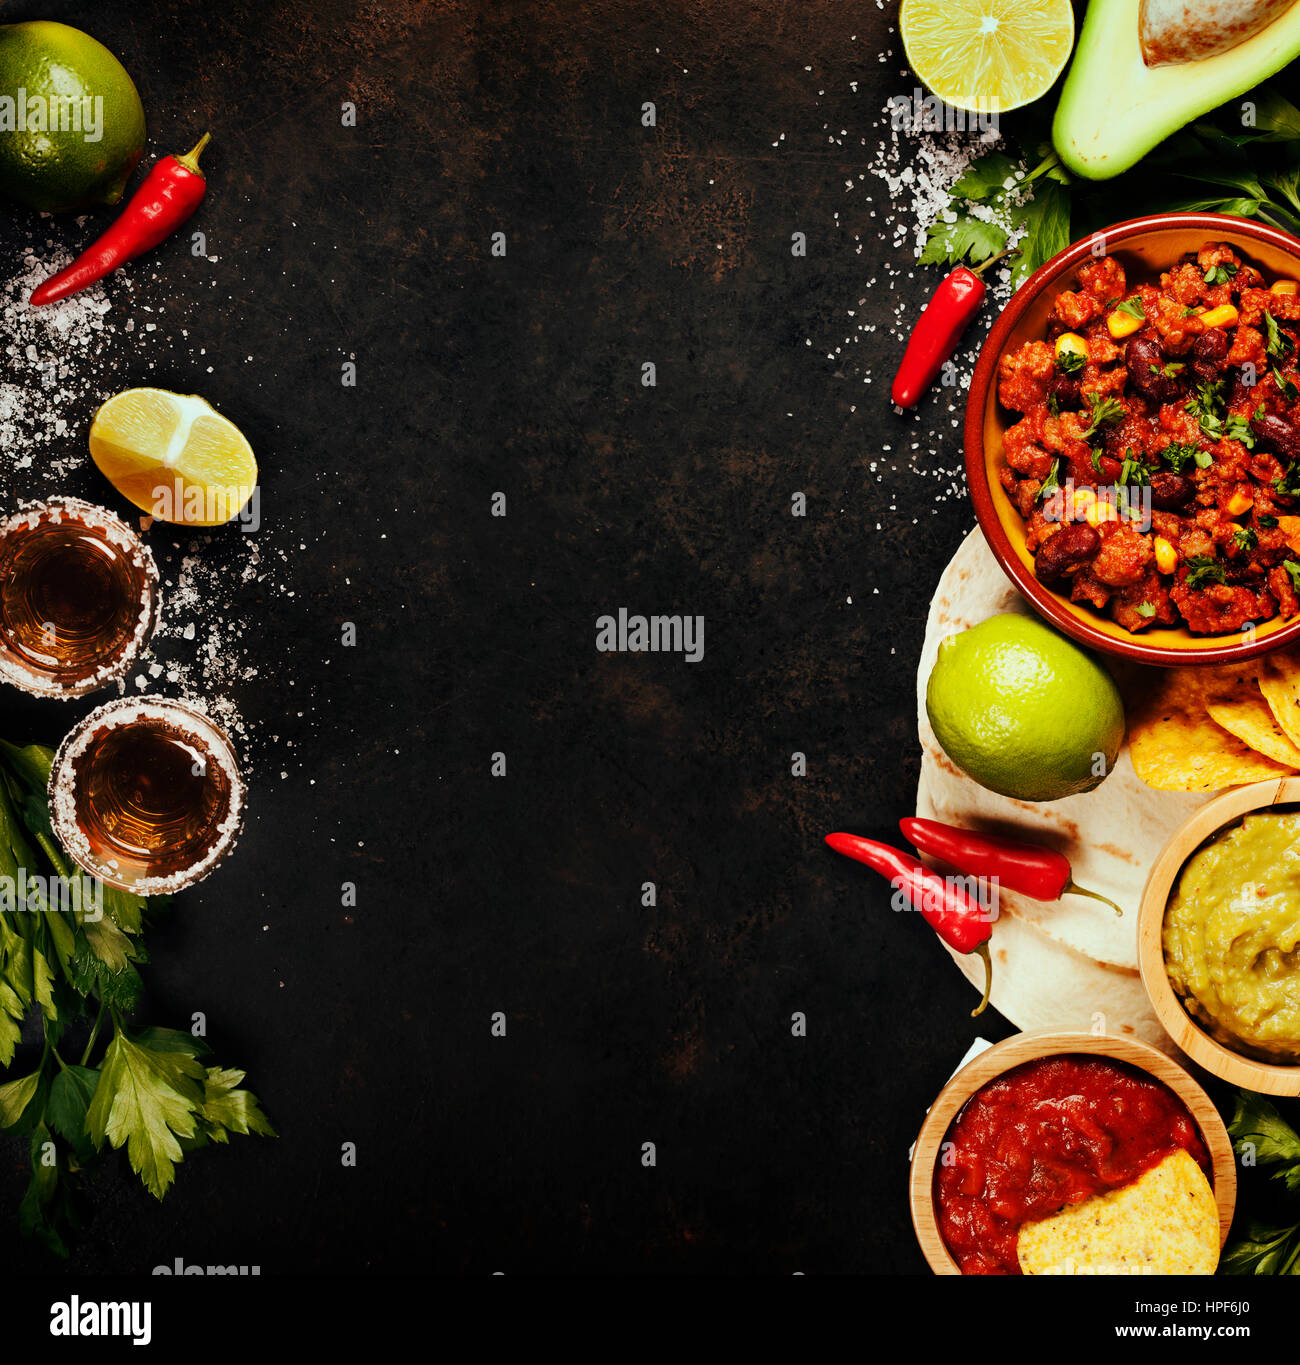 Mexikanisches Essenskonzept: Tortilla-Chips, Guacamole, Salsa, Chili mit Bohnen, Tequila Shots und frischen Zutaten über Vintage rostigen Metall-Hintergrund. An Stockfoto